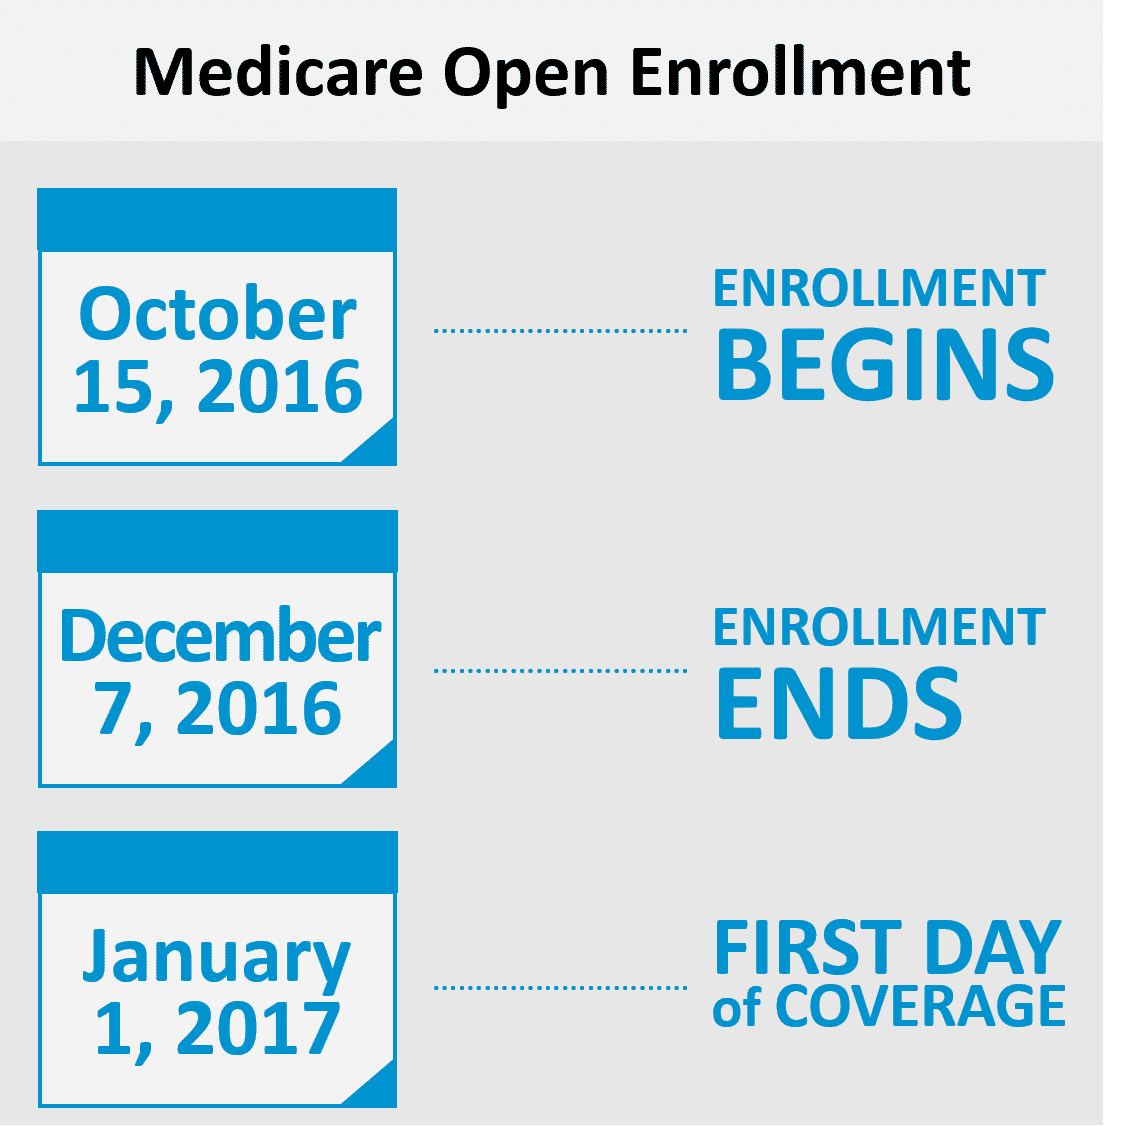 Medicare Open Enrollment begins October 15